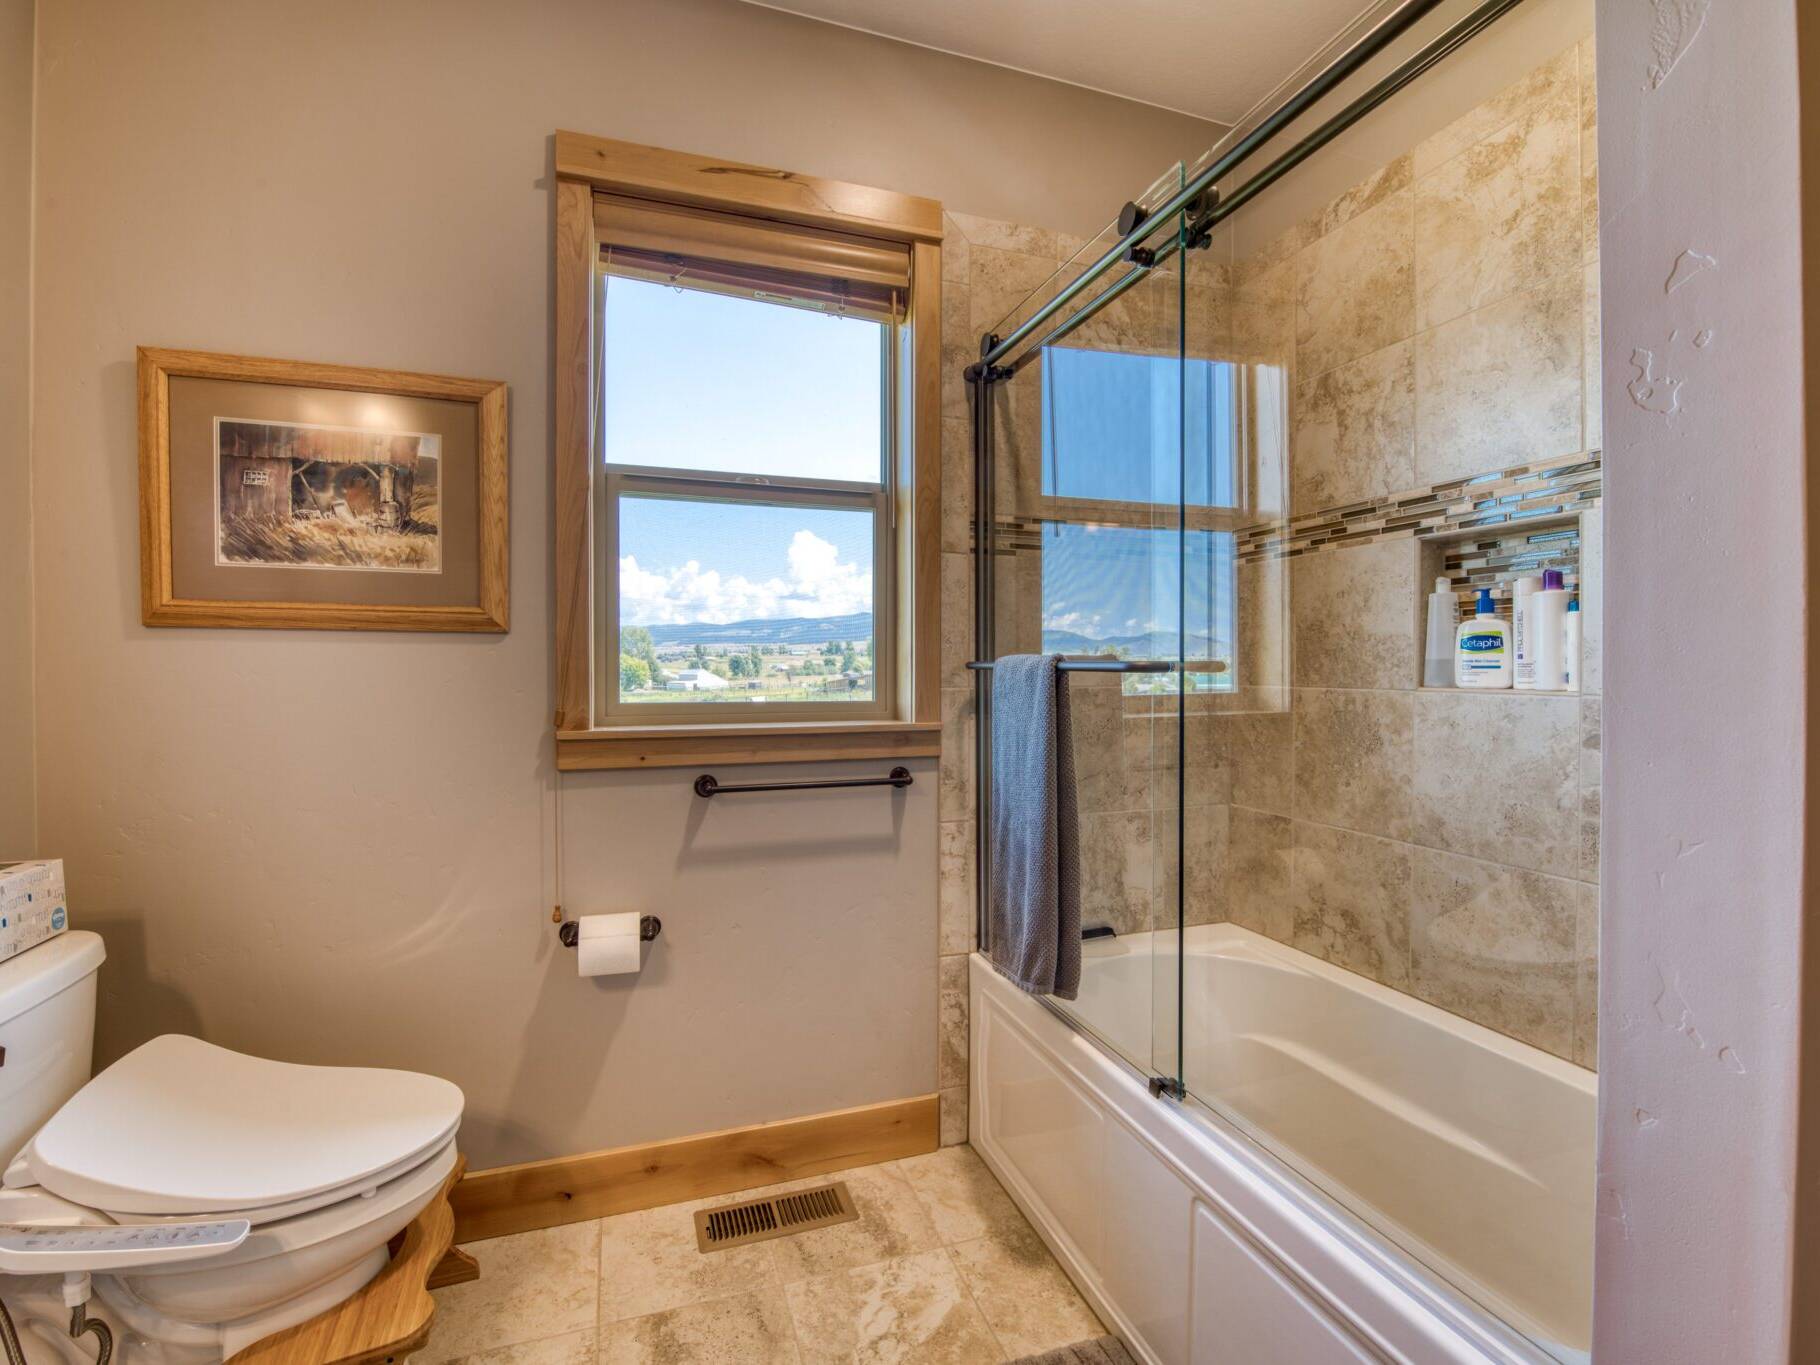 Guest bathroom in a custom home built by Big Sky Builders in Stevensville, MT